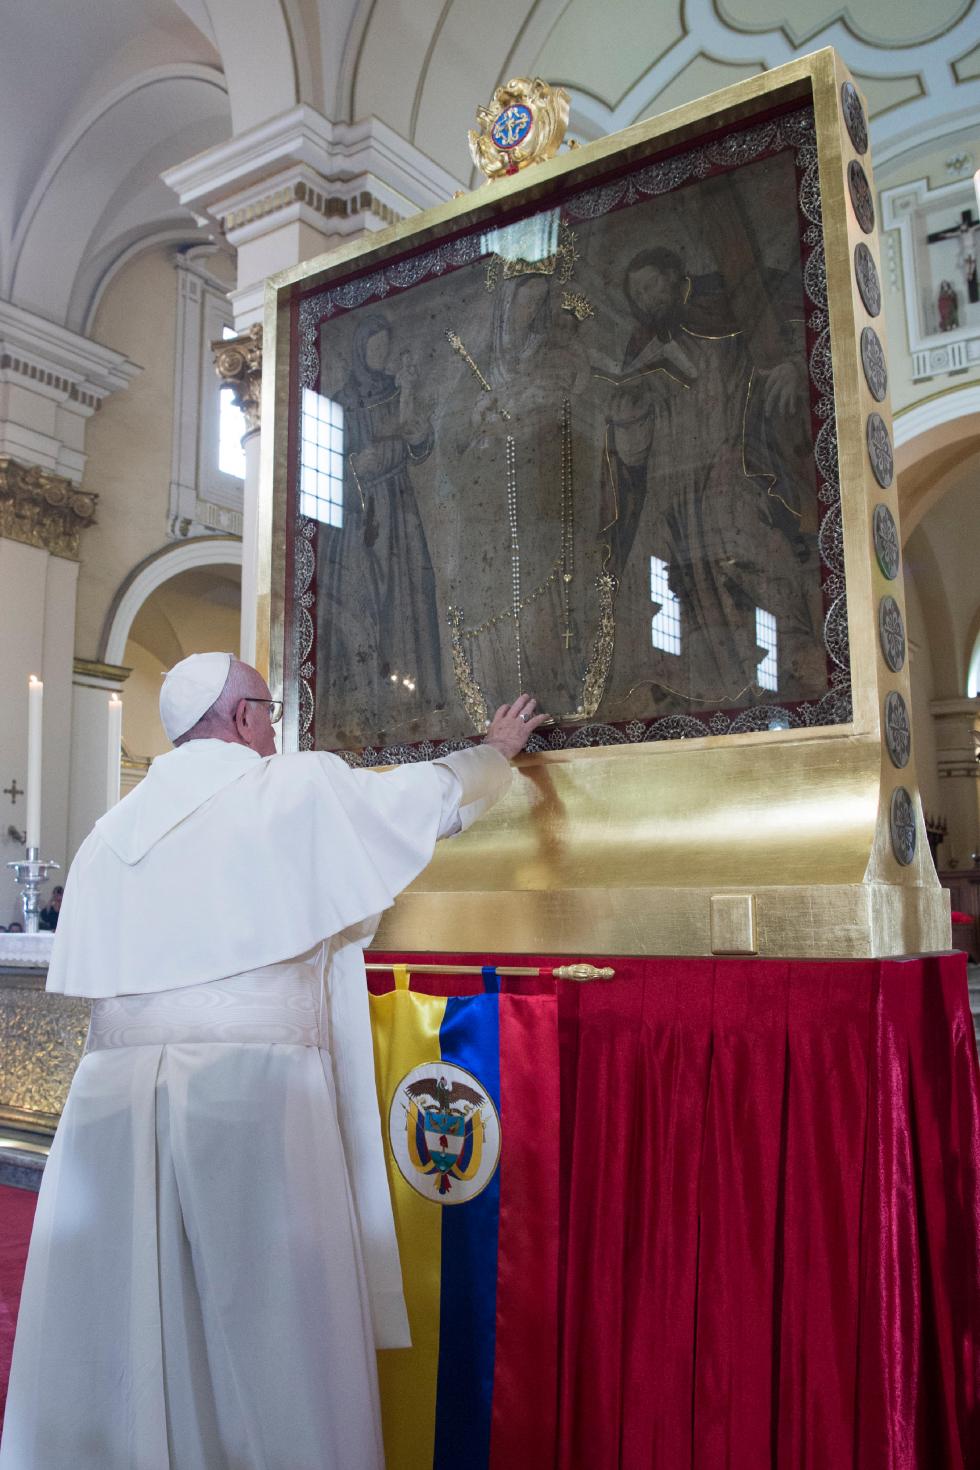 Bogotà (Colombia), 7 settembre 2017: Papa Francesco visita la Cattedrale